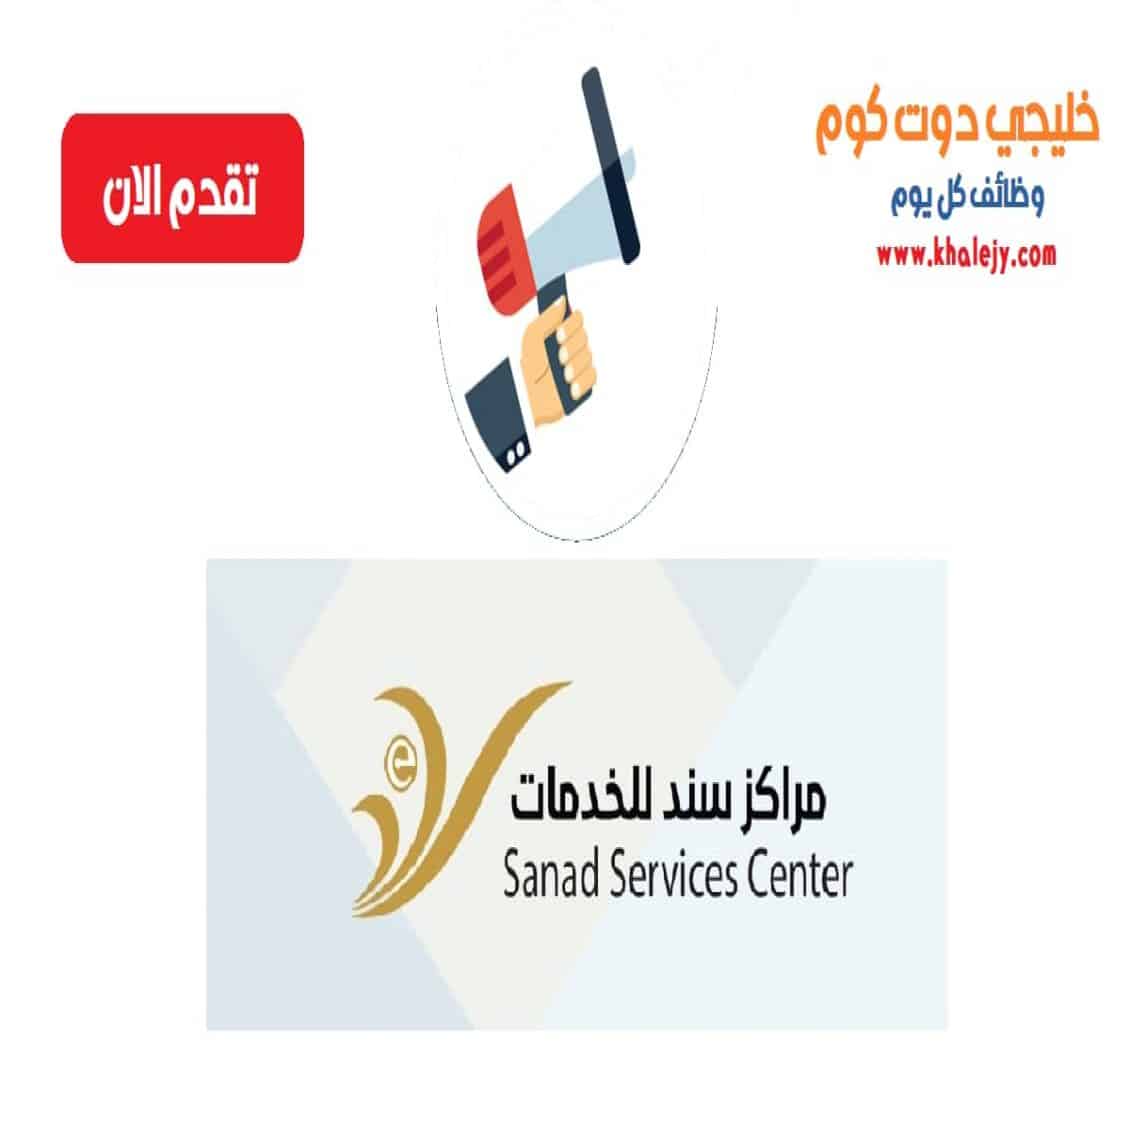 وظائف مركز سند للخدمات في سلطنة عمان